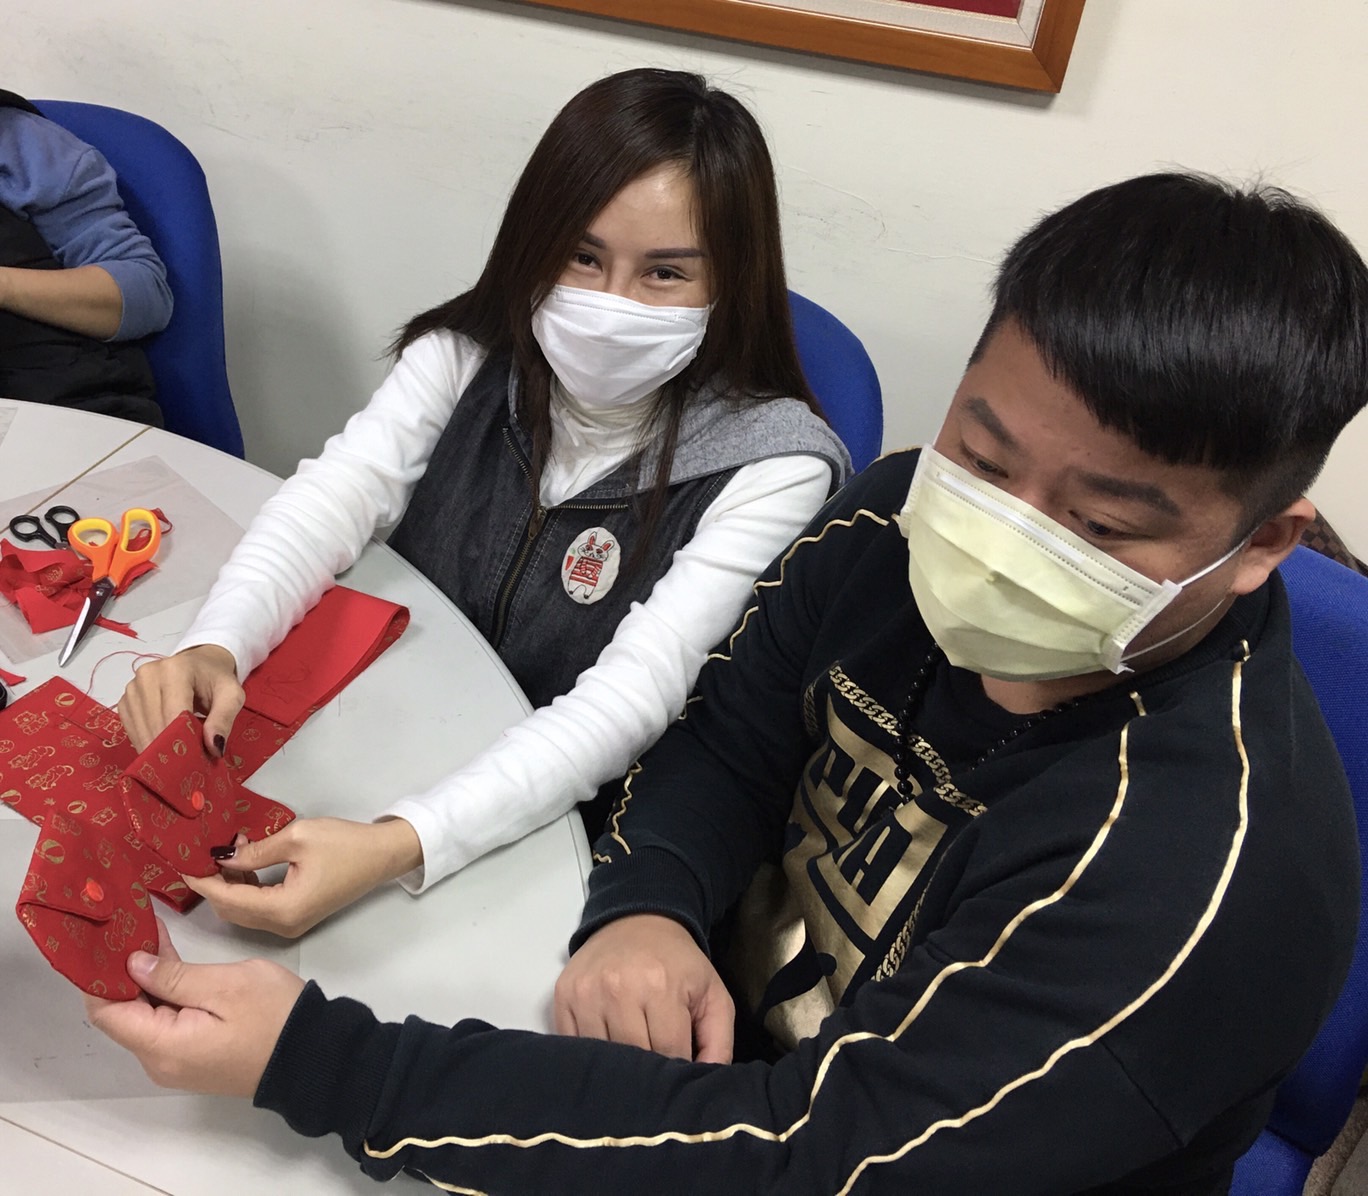 Pasangan penduduk baru dengan senang menunjukkan amplop merah buatan mereka sendiri. (Sumber: Stasiun Layanan Kabupaten Hualien)